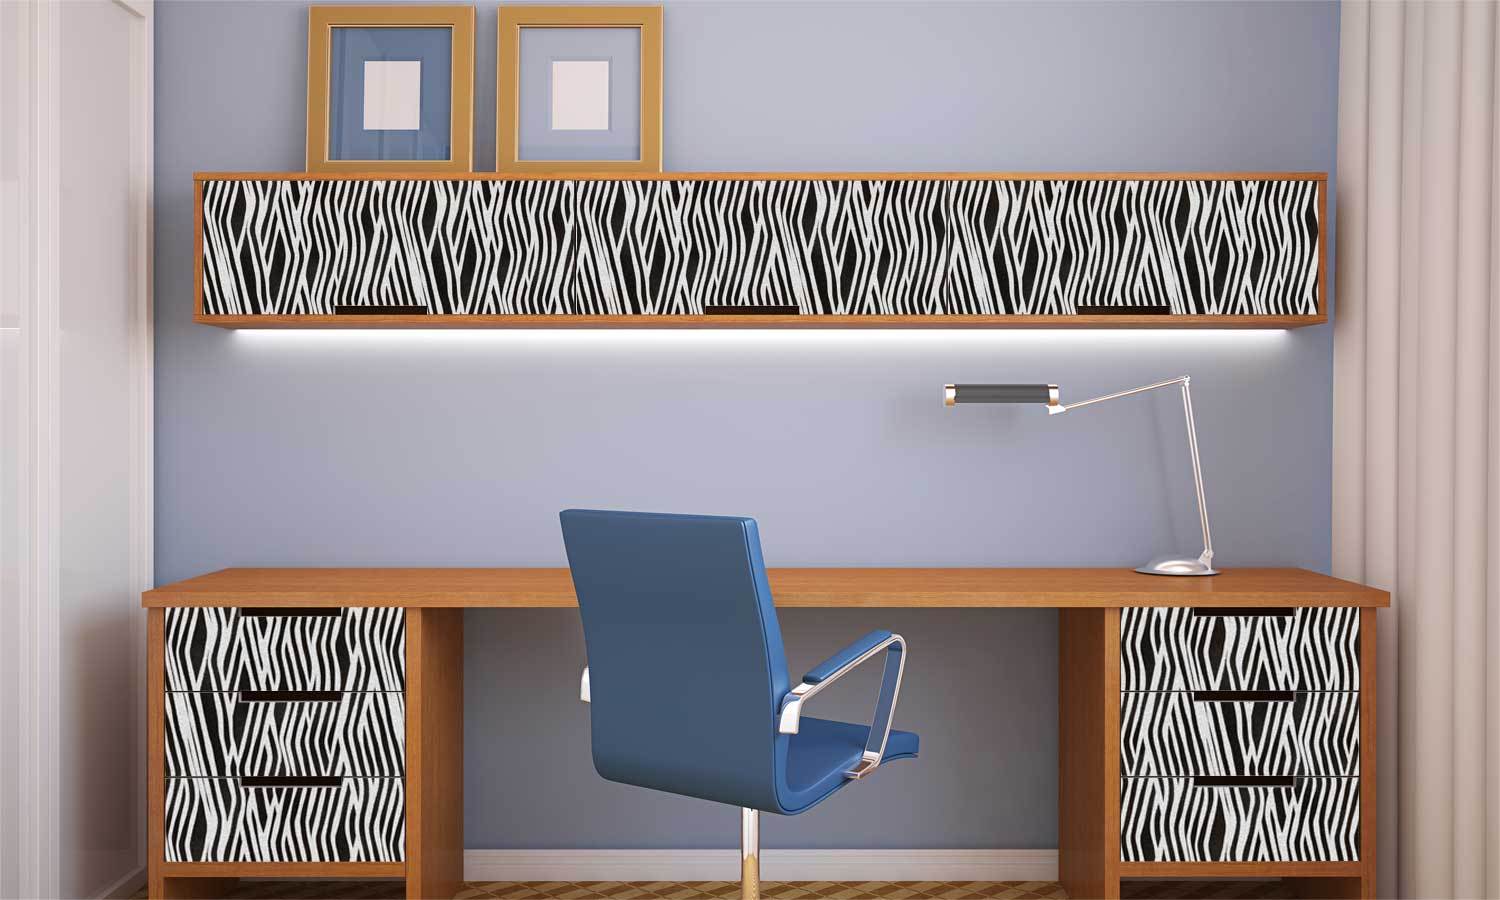 Möbel aus selbstklebendem Vinyl Möbel Zebra - Life-decor - Life Decor DE